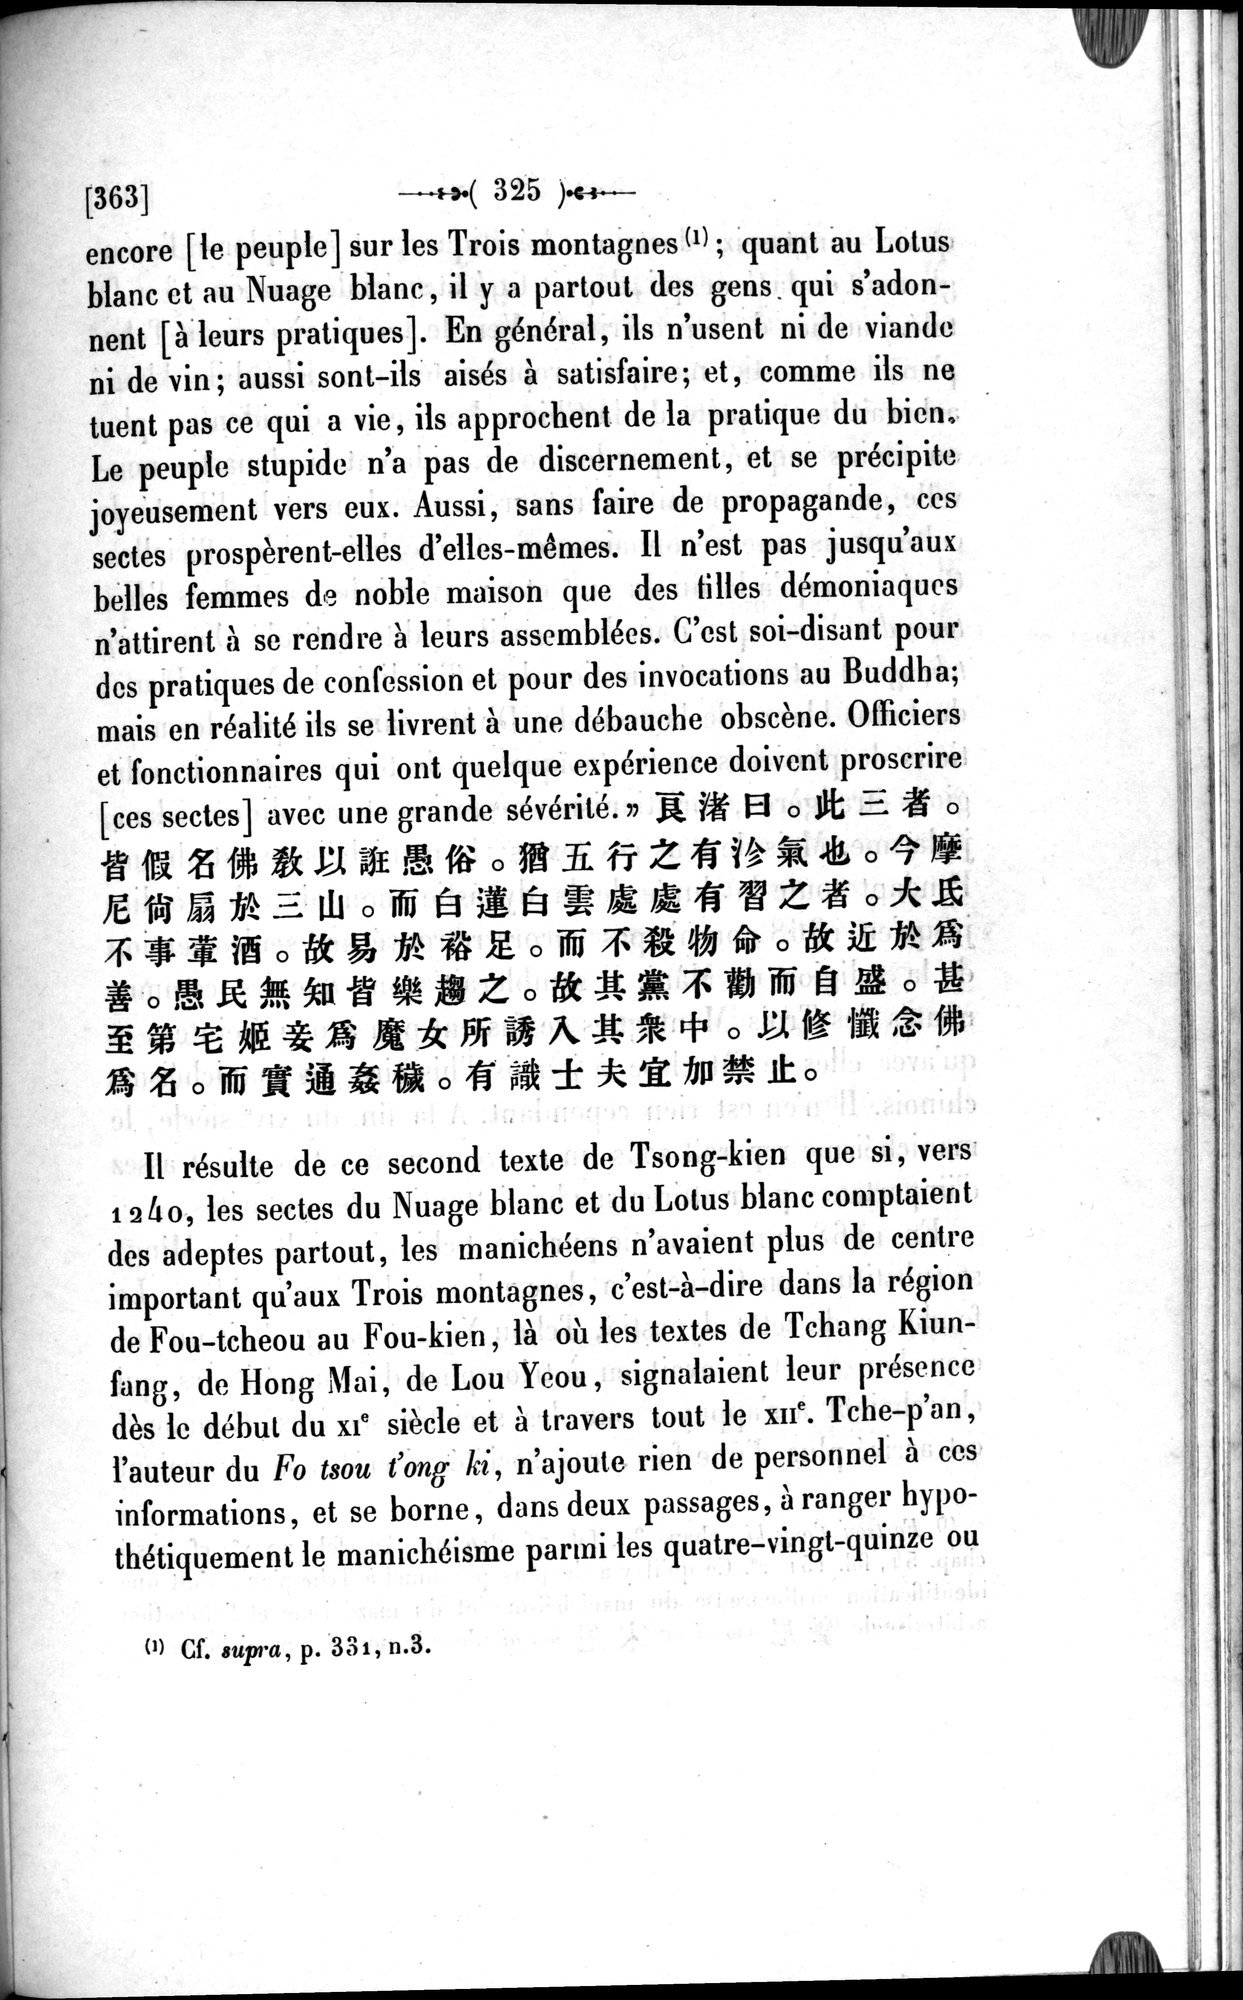 Un traité manichéen retrouvé en Chine : vol.1 / Page 335 (Grayscale High Resolution Image)